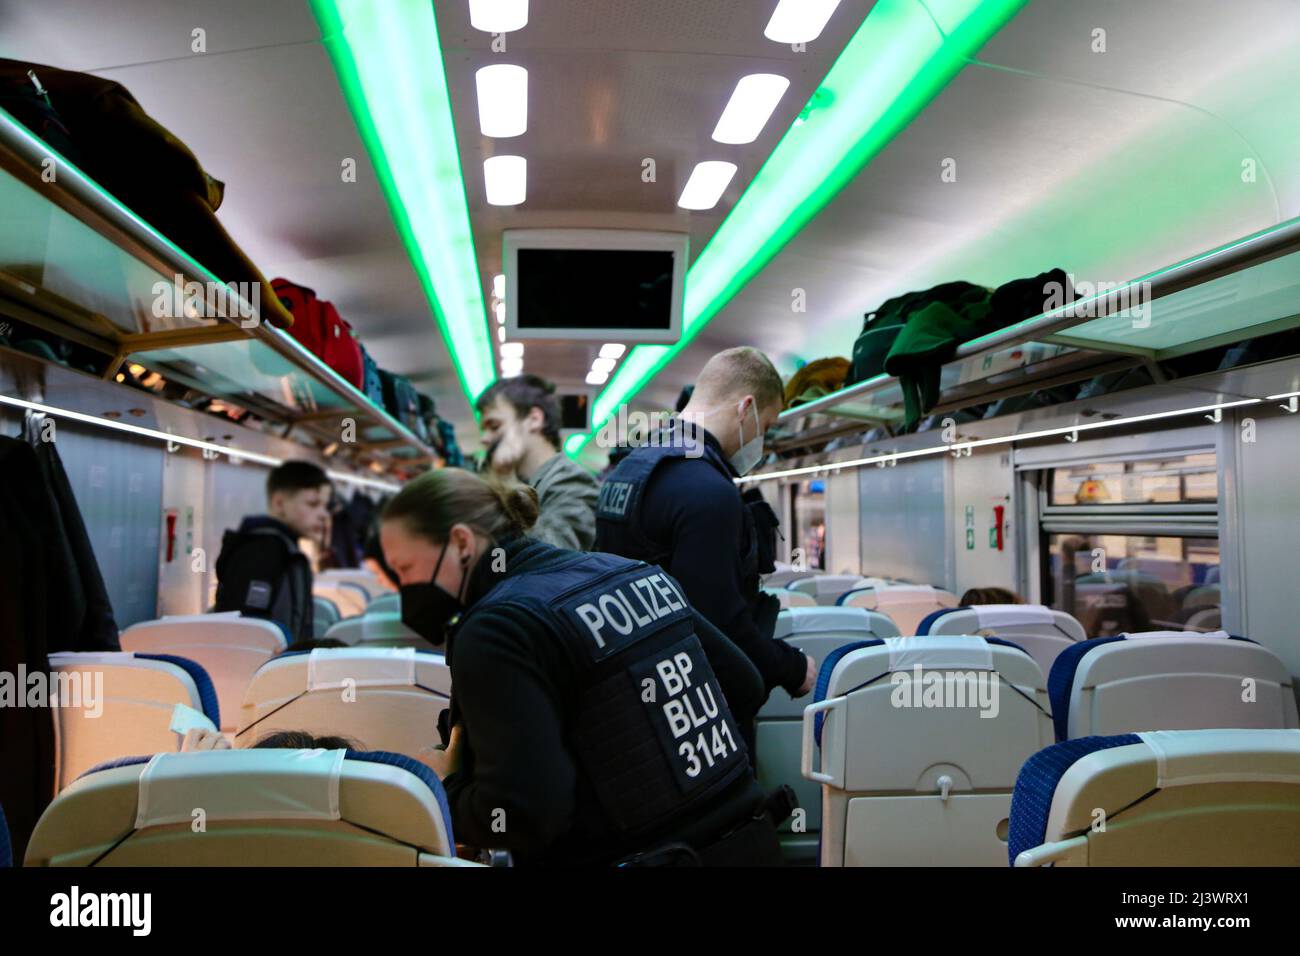 Frontière germano-polonaise : contrôle des frontières dans un train de réfugiés avec des réfugiés ukrainiens. Les passeports sont contrôlés par la police allemande. Banque D'Images